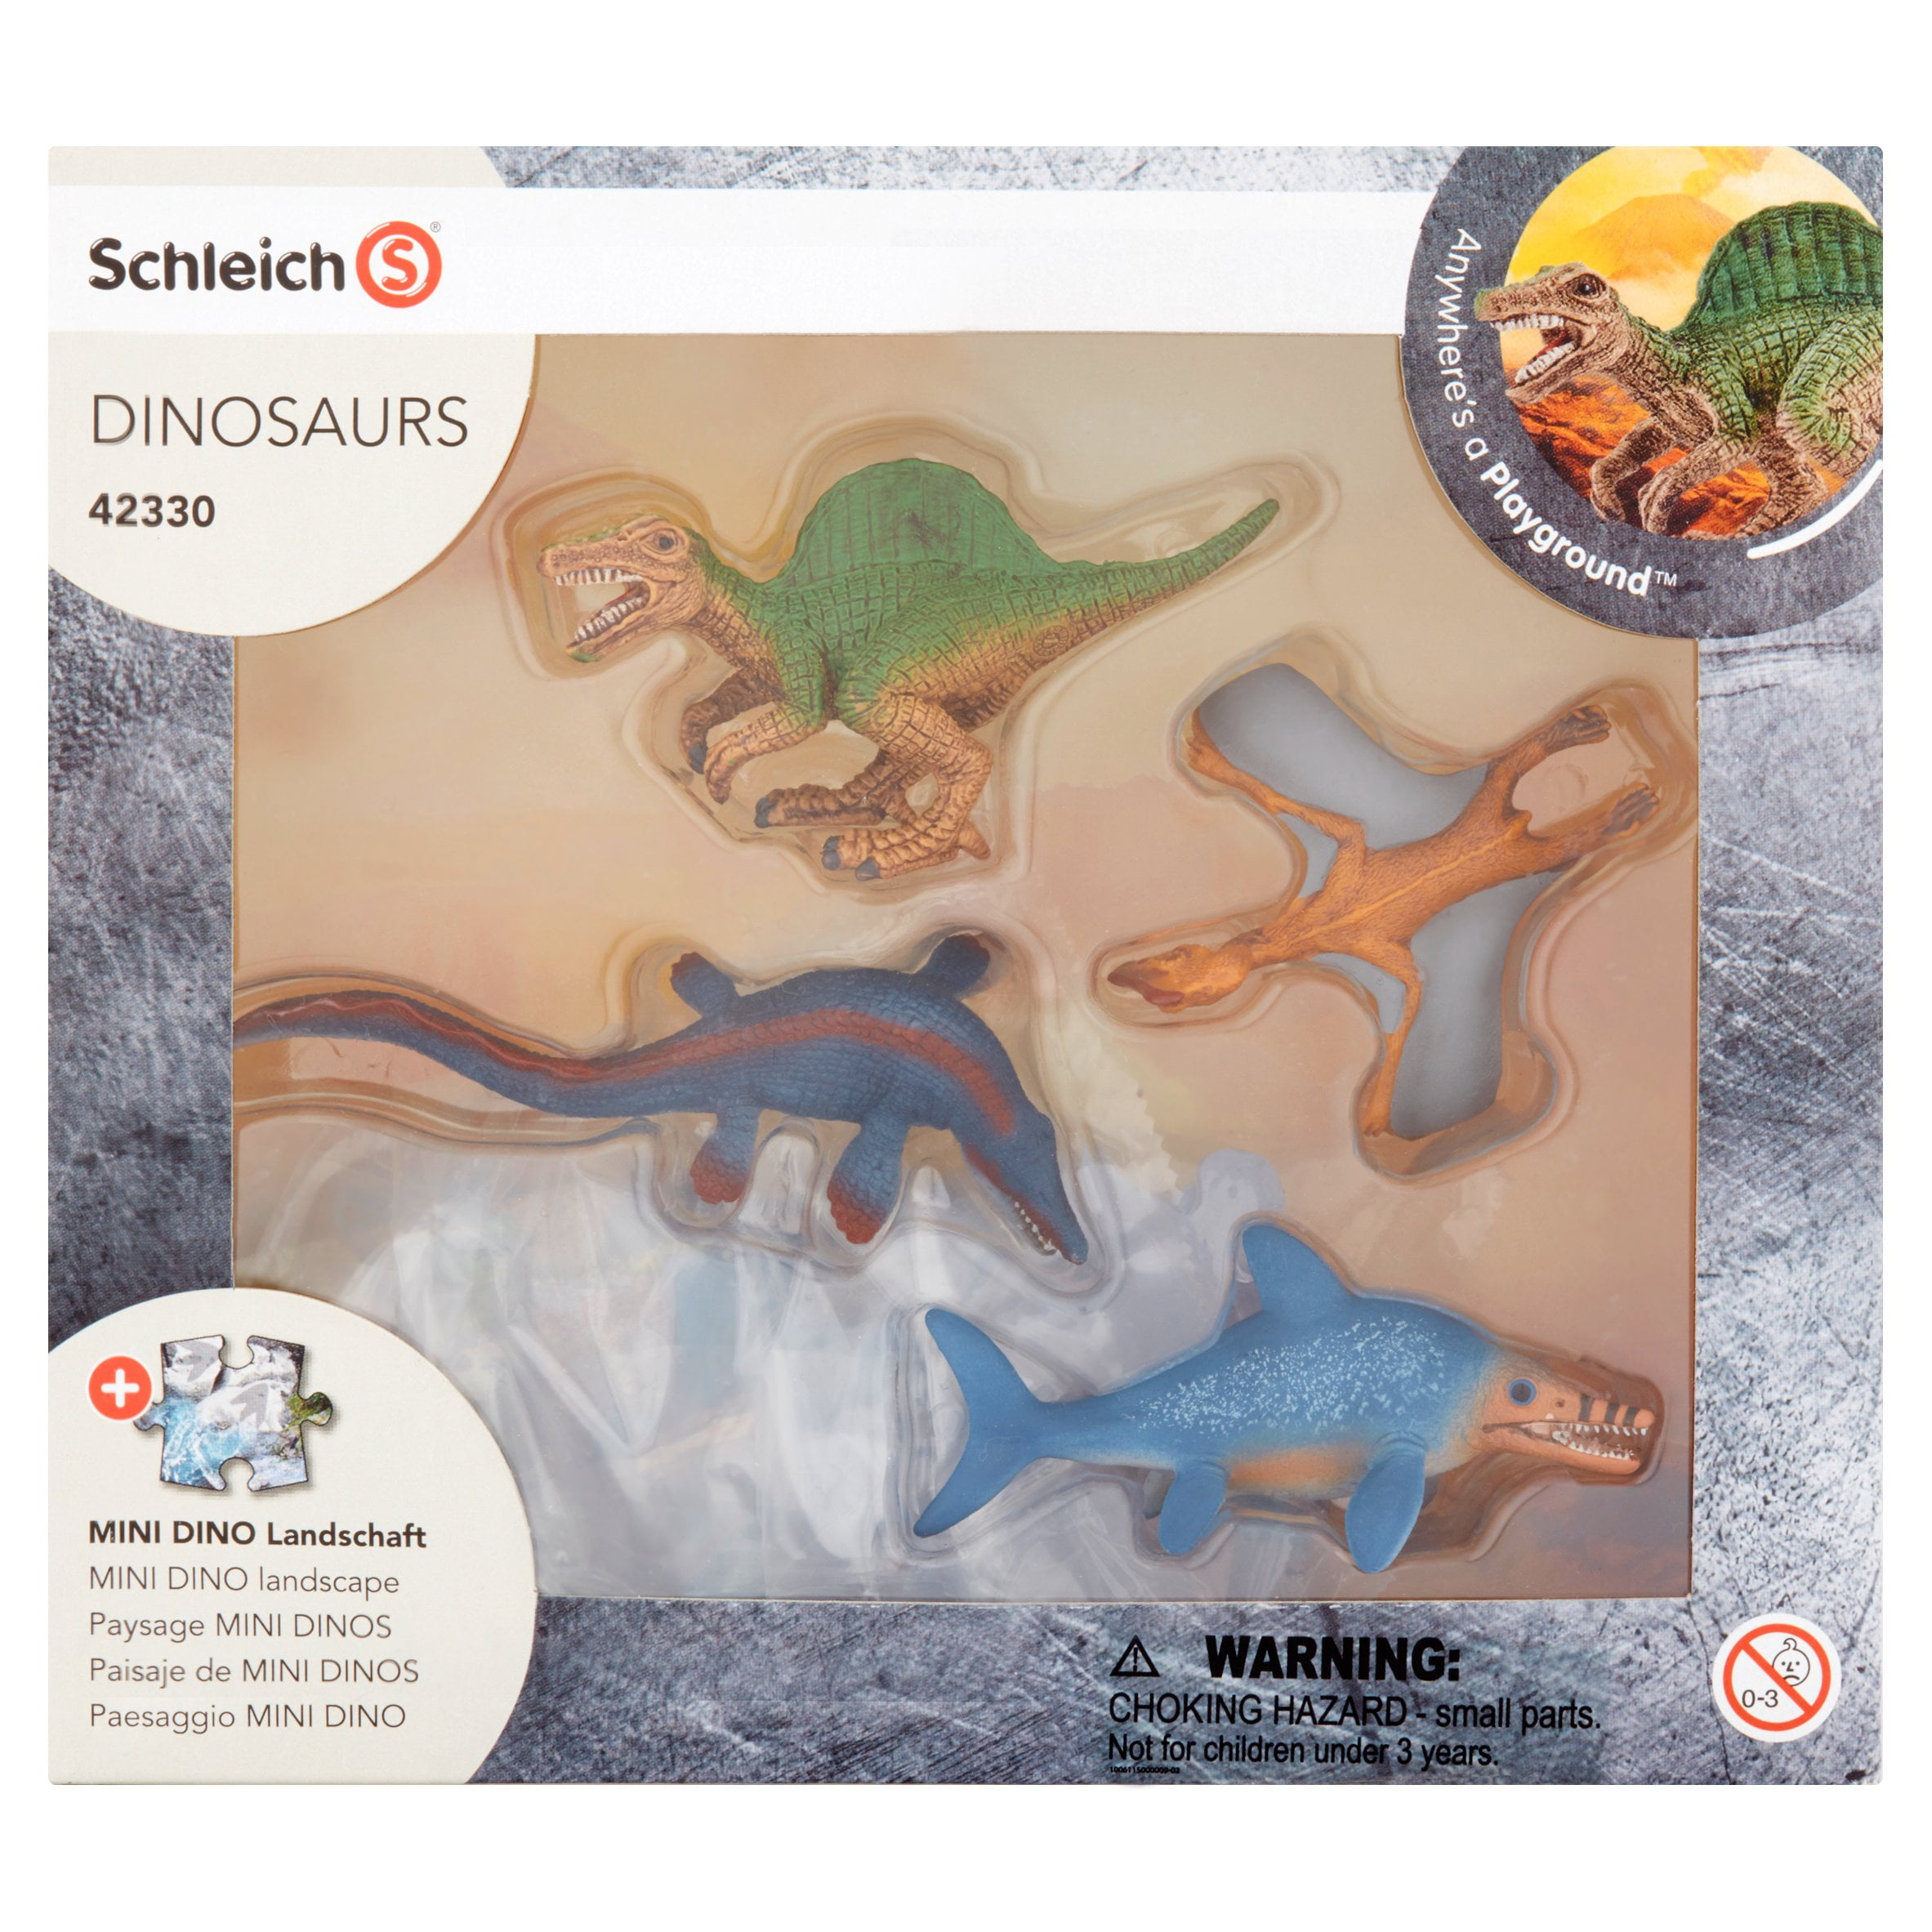 Schleich Dinosaurs 15002 Dinogorgon 18039 